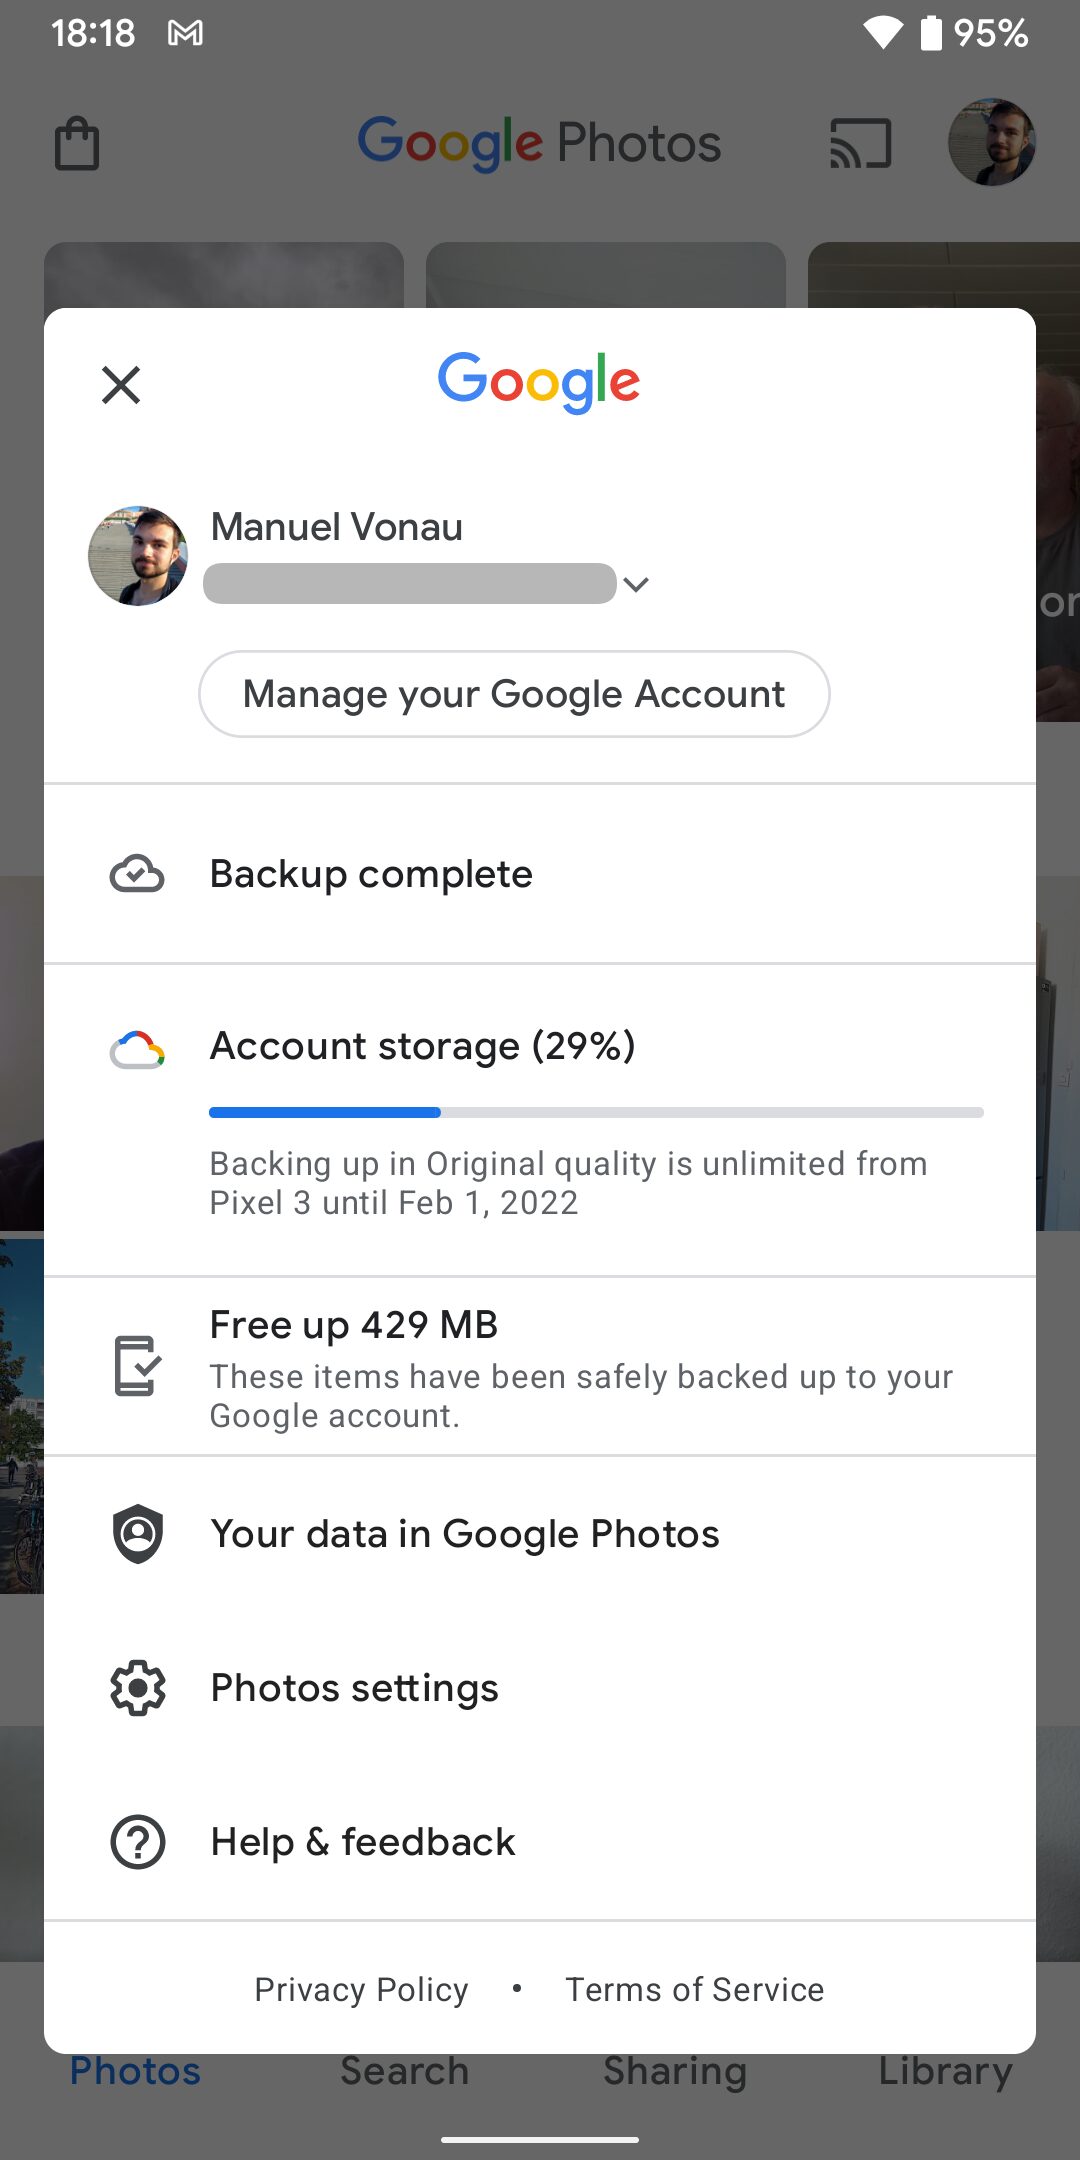 Завтра Google прекращает бесплатное неограниченное хранение фотографий на Google Фото